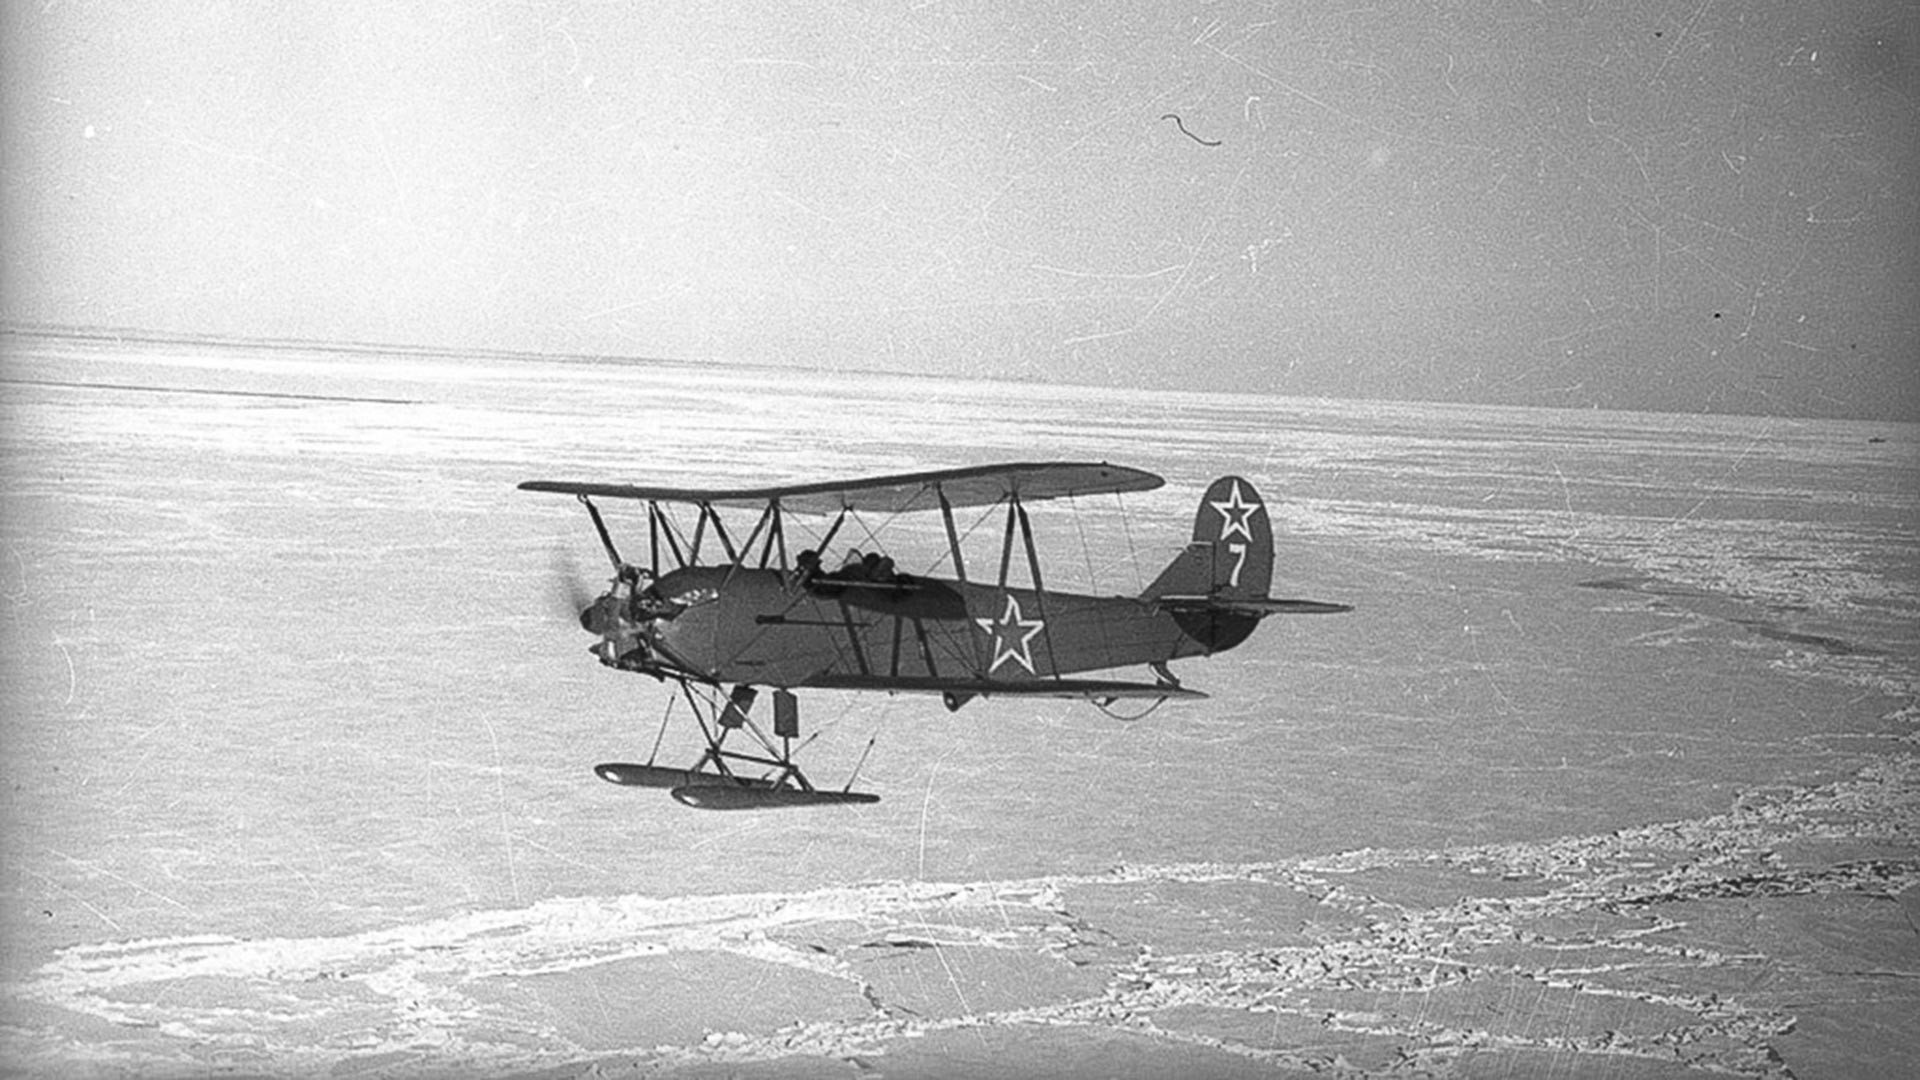 Avion U-2 br. 7 će oboriti neprijateljska PZO u noć uoči 1. kolovoza 1943. Posada (pilotkinja Polunjina Valentina Ivanovna i navigatorica Kaširina Glafira Aleksejevna) će poginuti.

